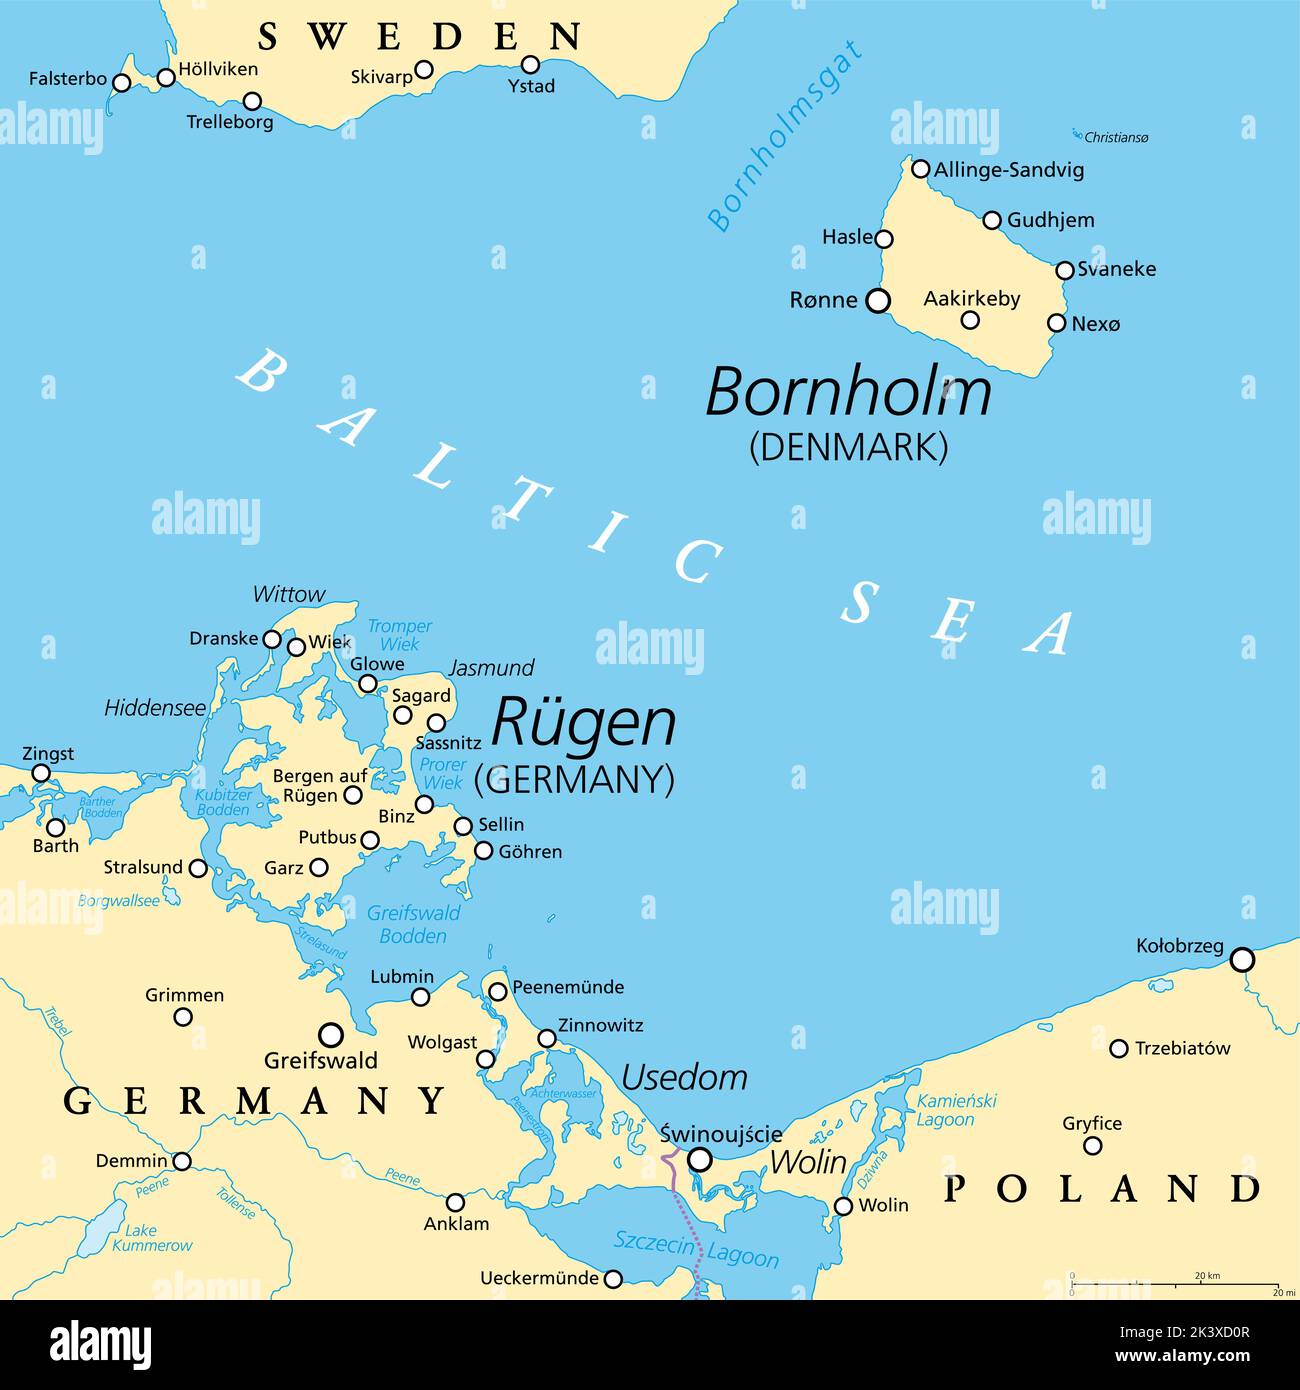 Politische Karte von Bornholm, einer dänischen Insel, und Rügen, der größten Insel Deutschlands. Beide Inseln liegen in der südlichen Ostsee. Stockfoto